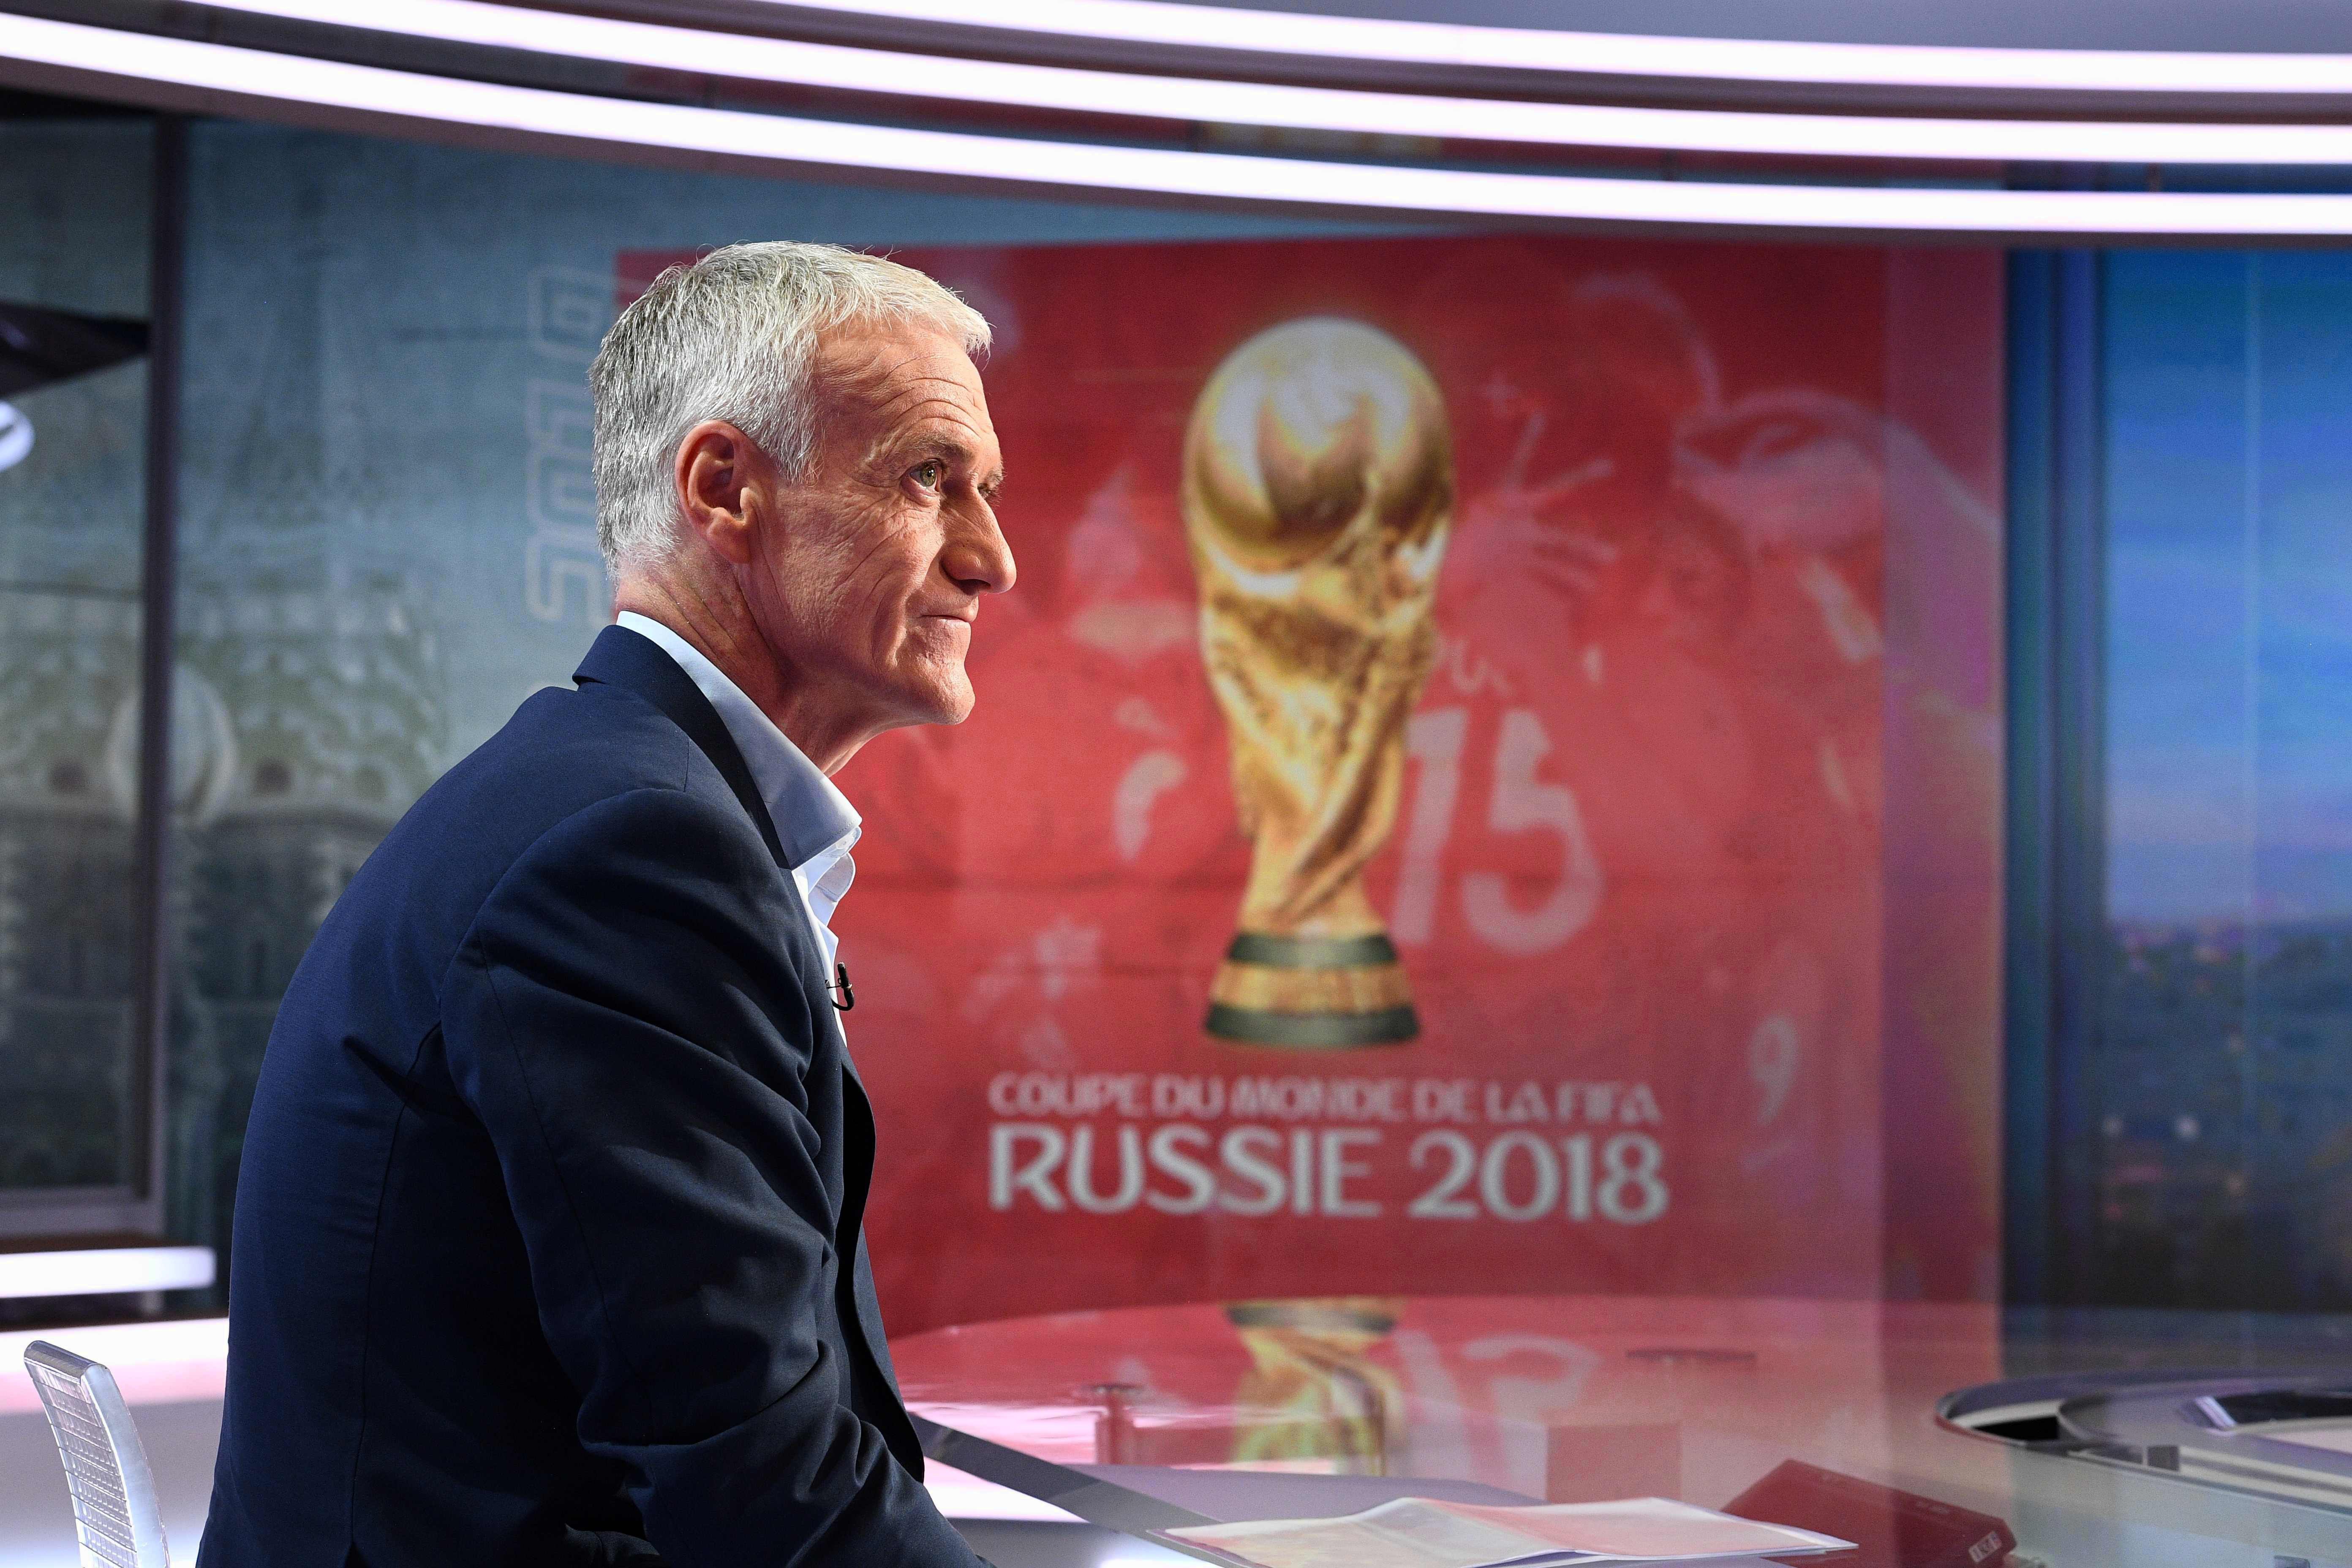 Coupe du monde Russie 2018 : des statistiques à retenir